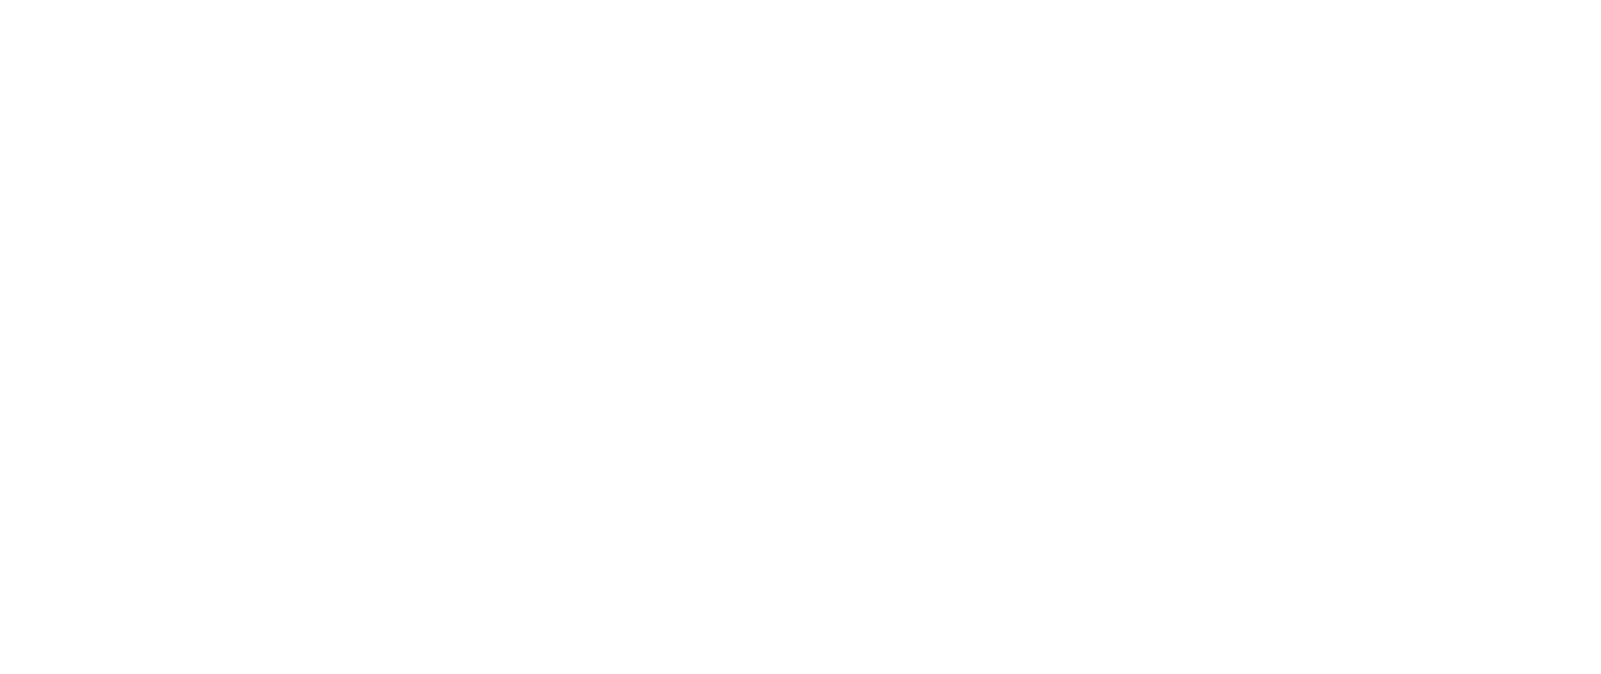 Bay FC prefers Visa